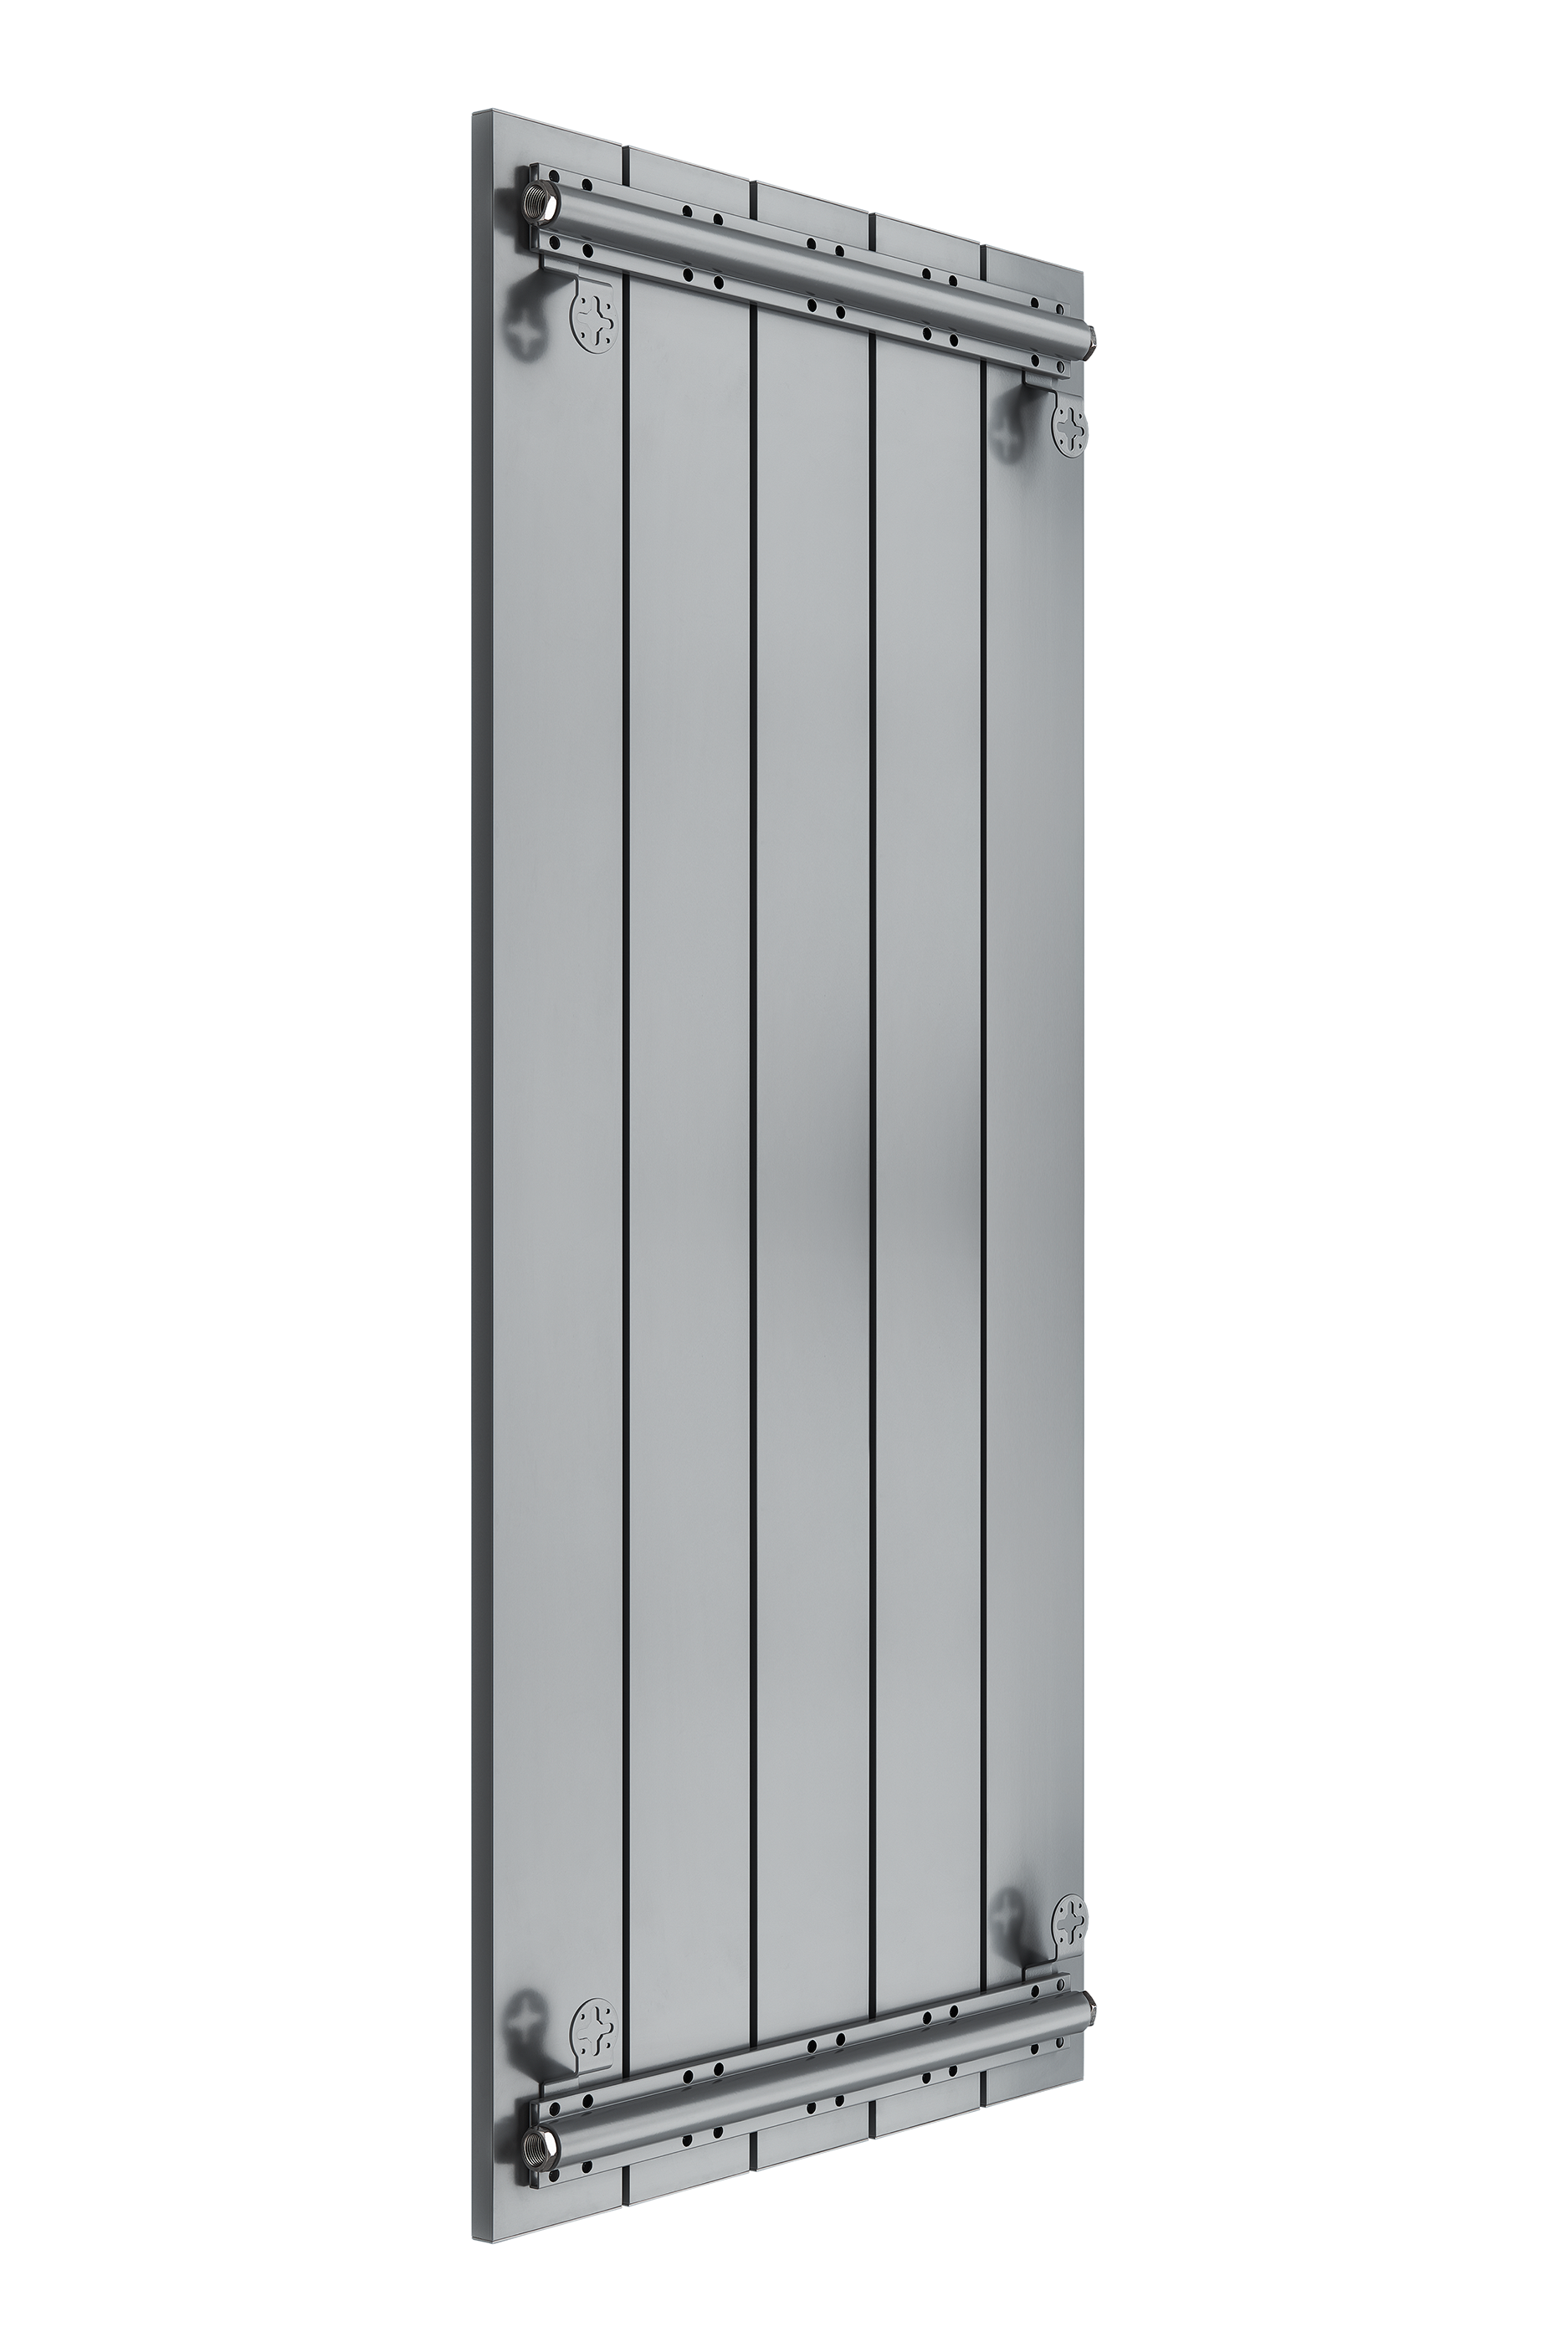 Секционный радиатор отопления Mivarmo 5 секций 200 см. серебристый матовый